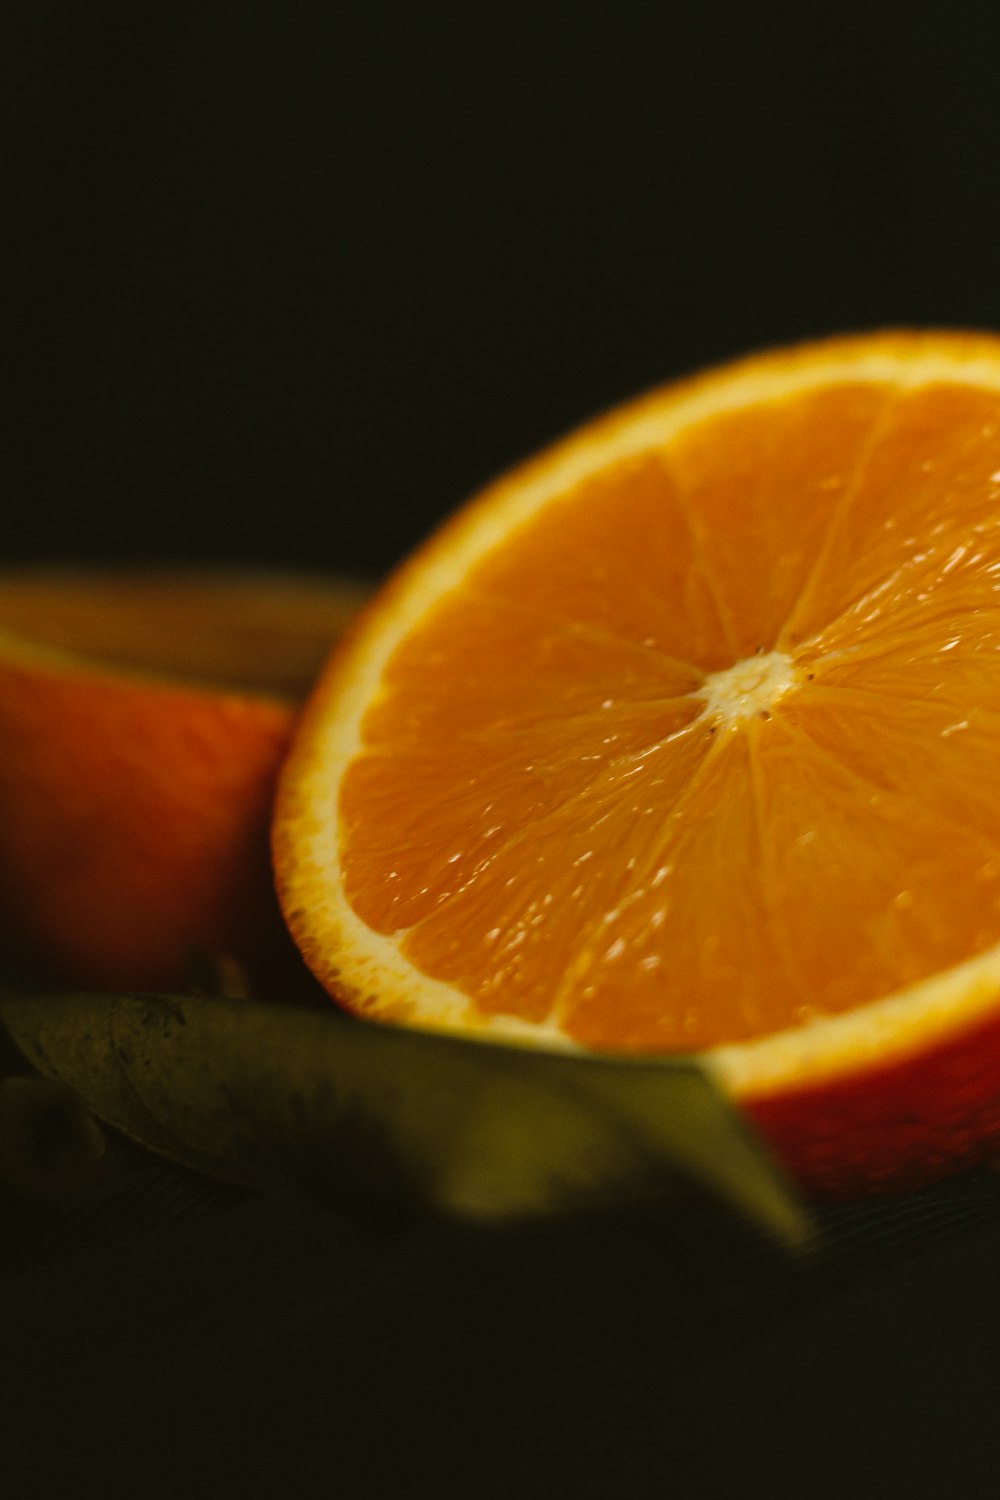 검은 배경에 얇게 썬 오렌지 과일